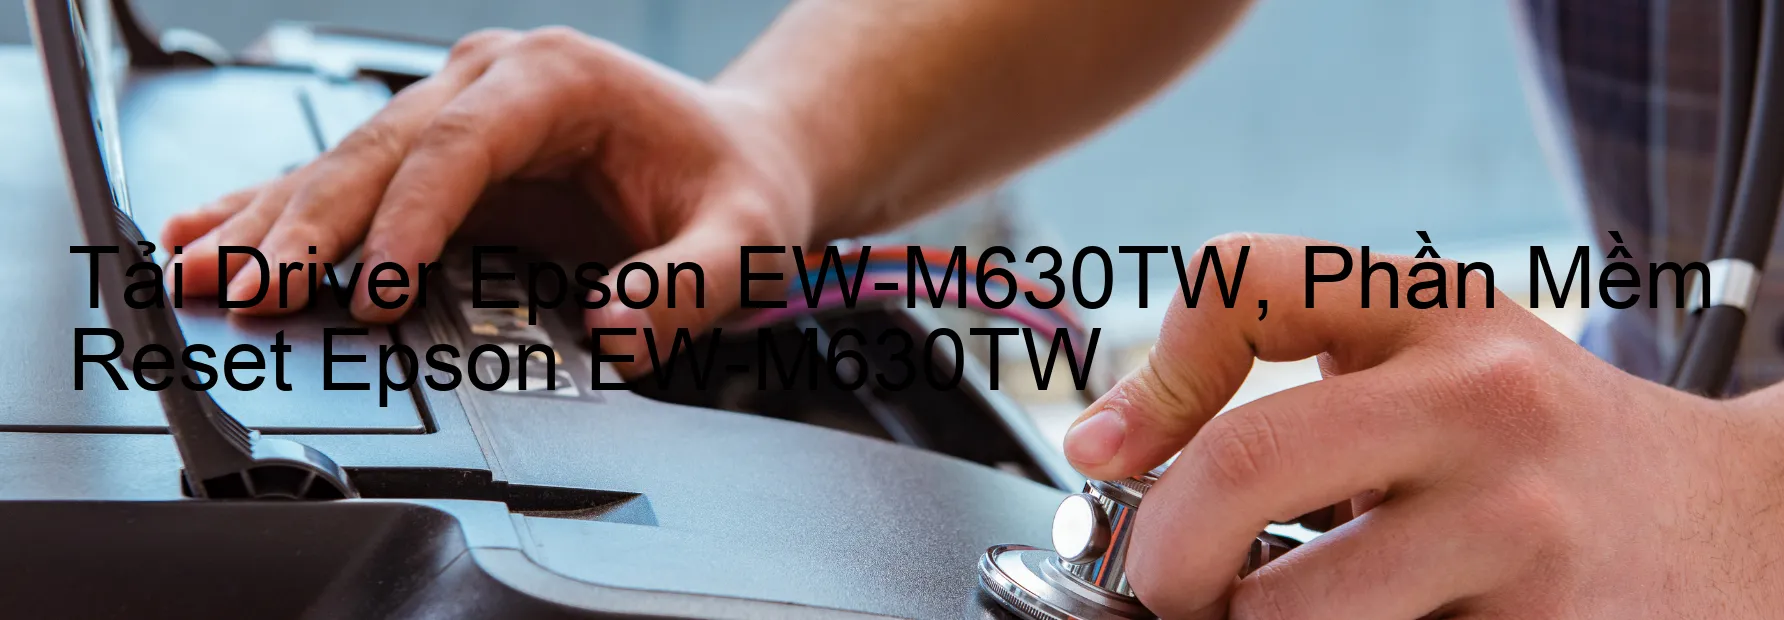 Driver Epson EW-M630TW, Phần Mềm Reset Epson EW-M630TW